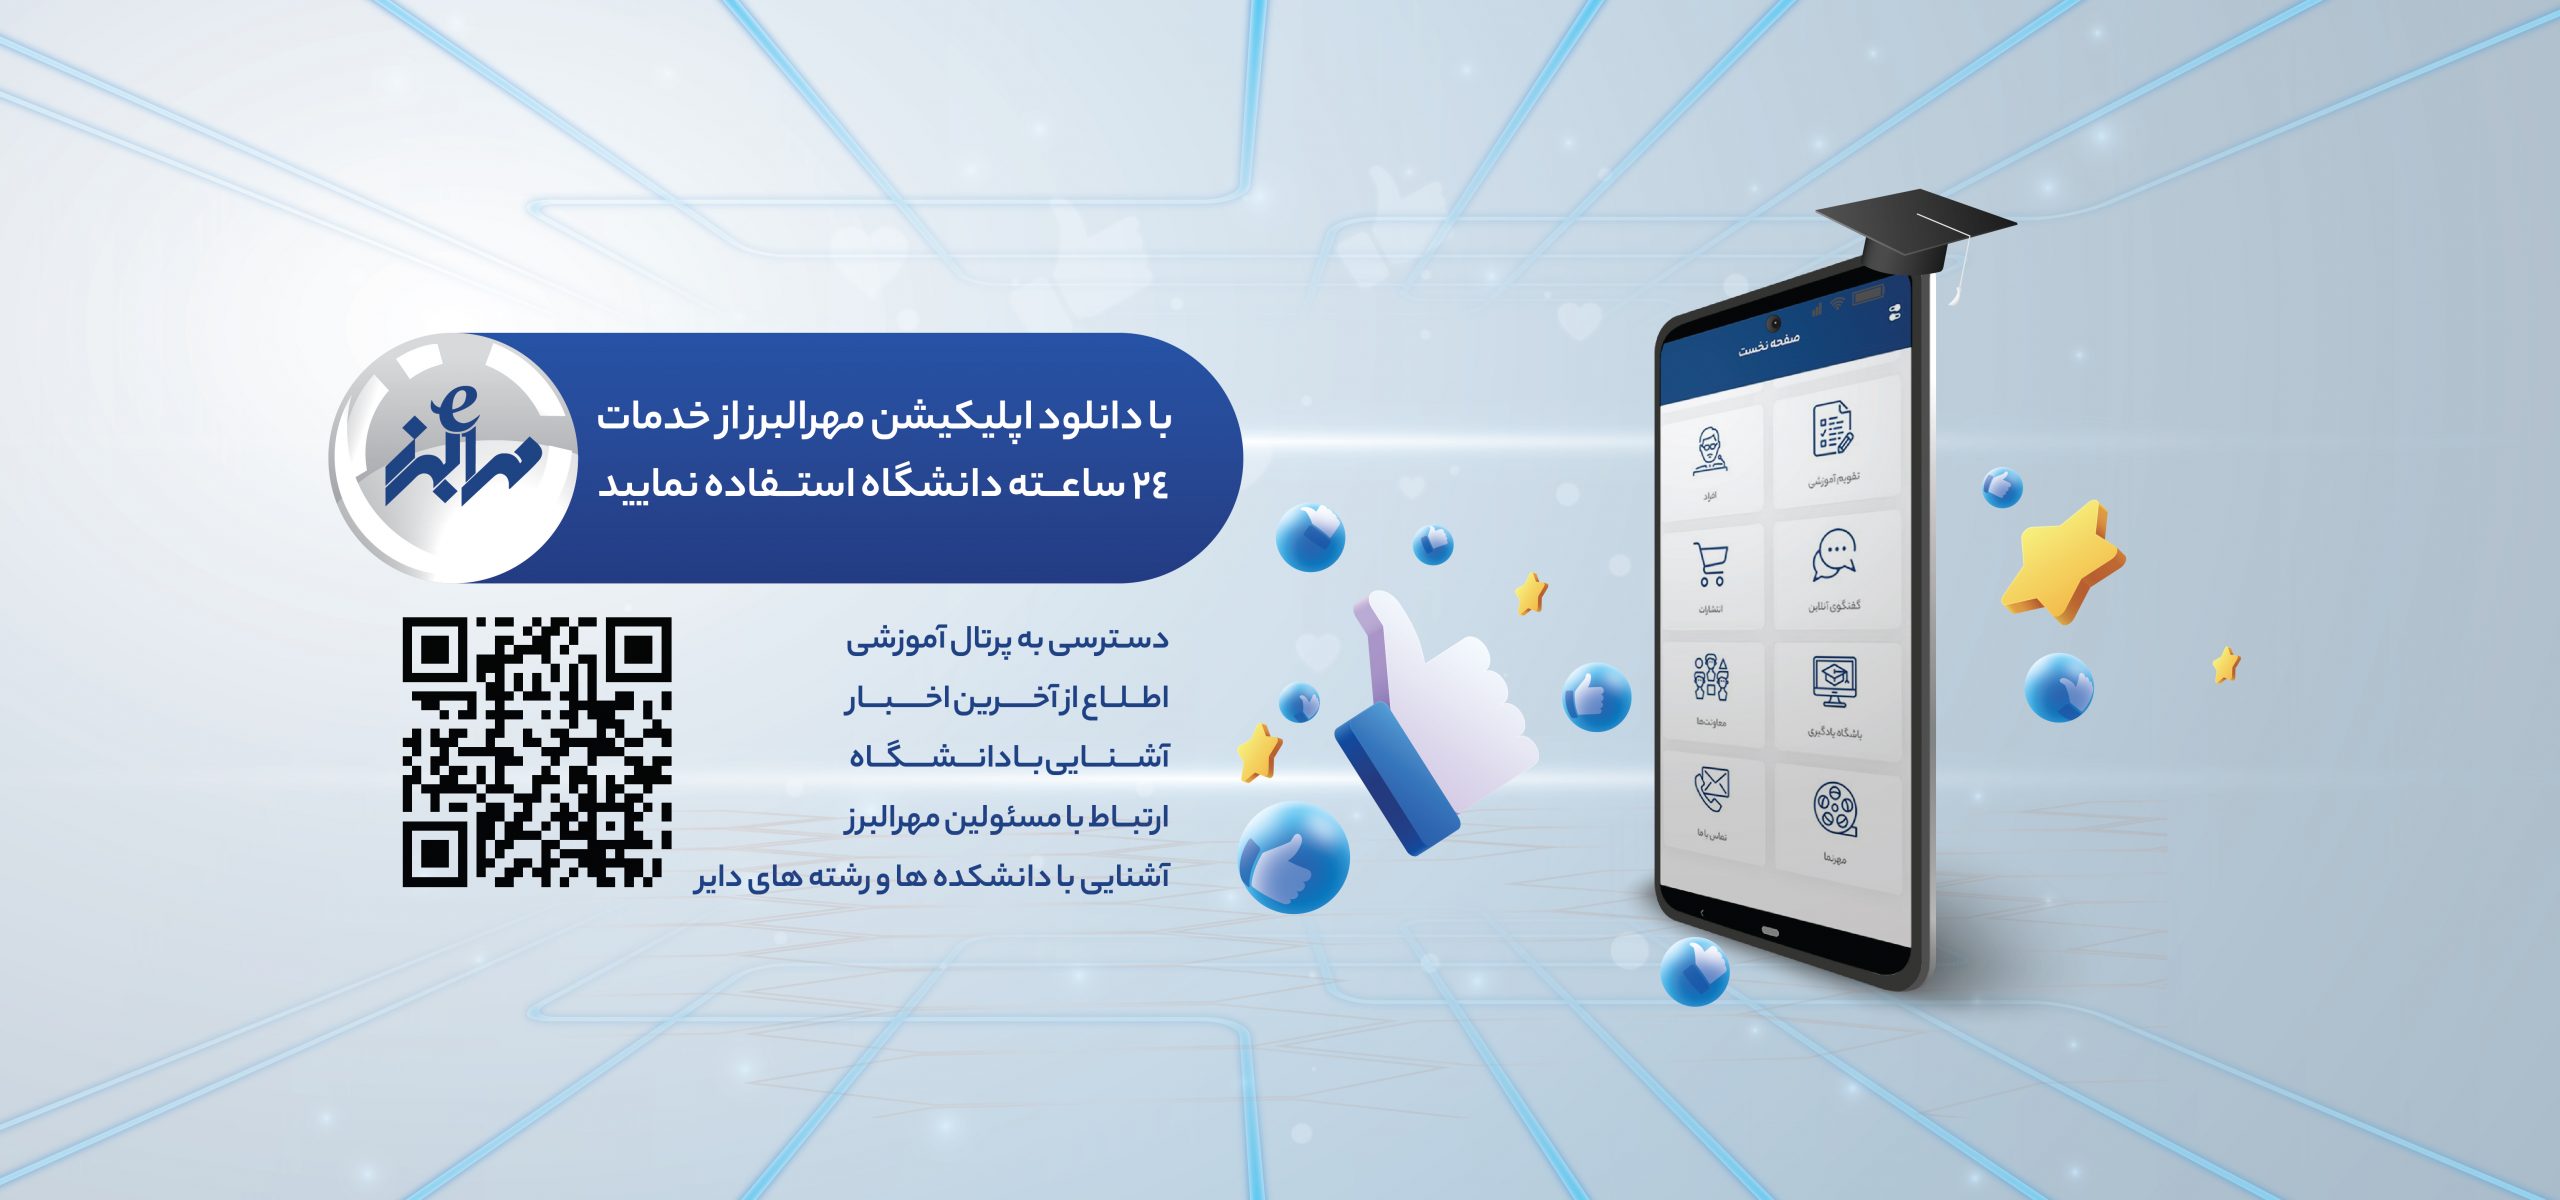 رونمایی از اپلیکیشن جدید تلفن همراه دانشگاه مهرالبرز